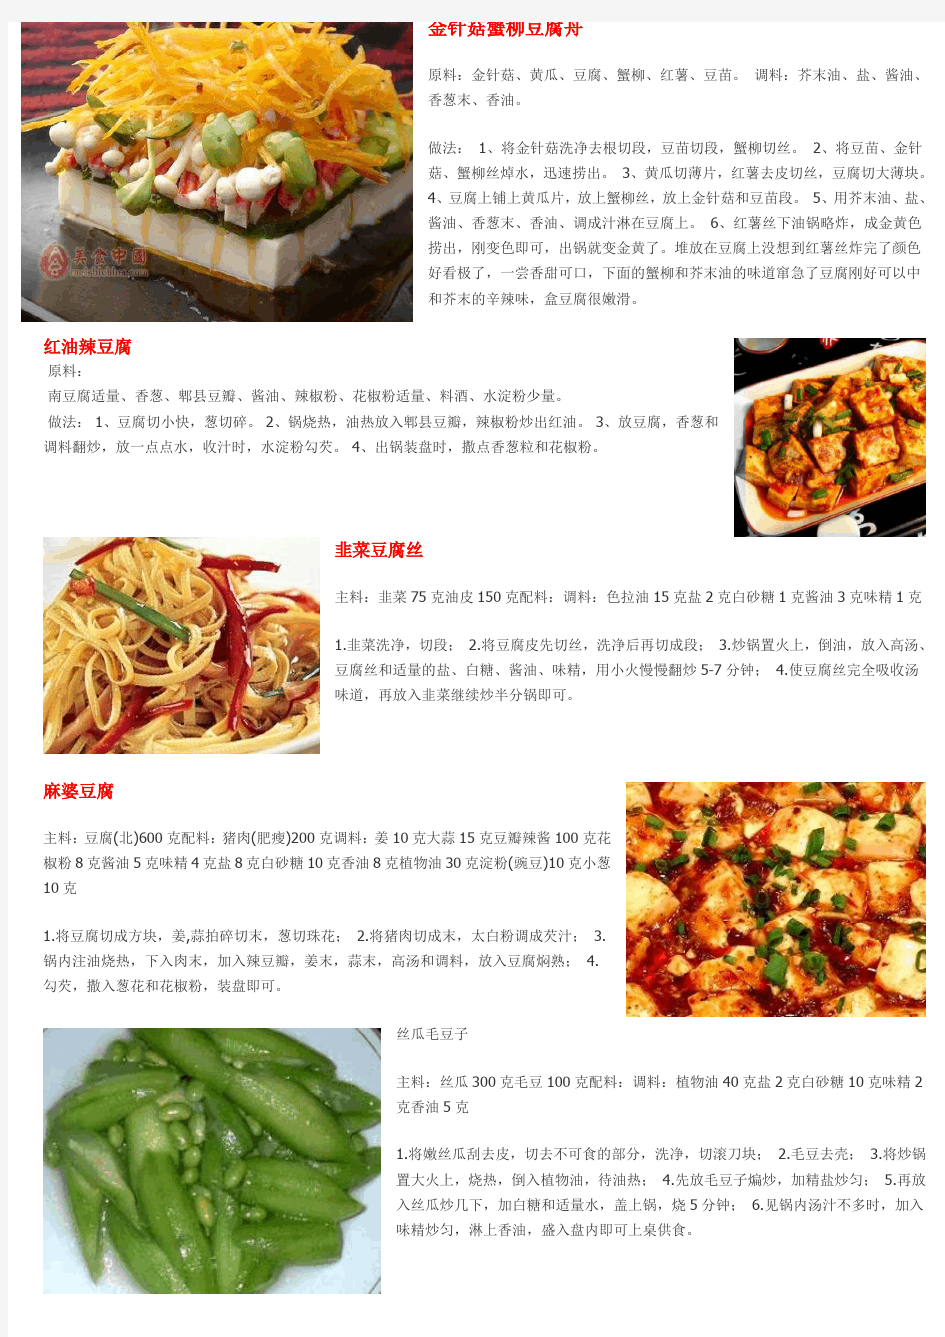 豆腐豆制品为主的家庭菜谱详细做法100种